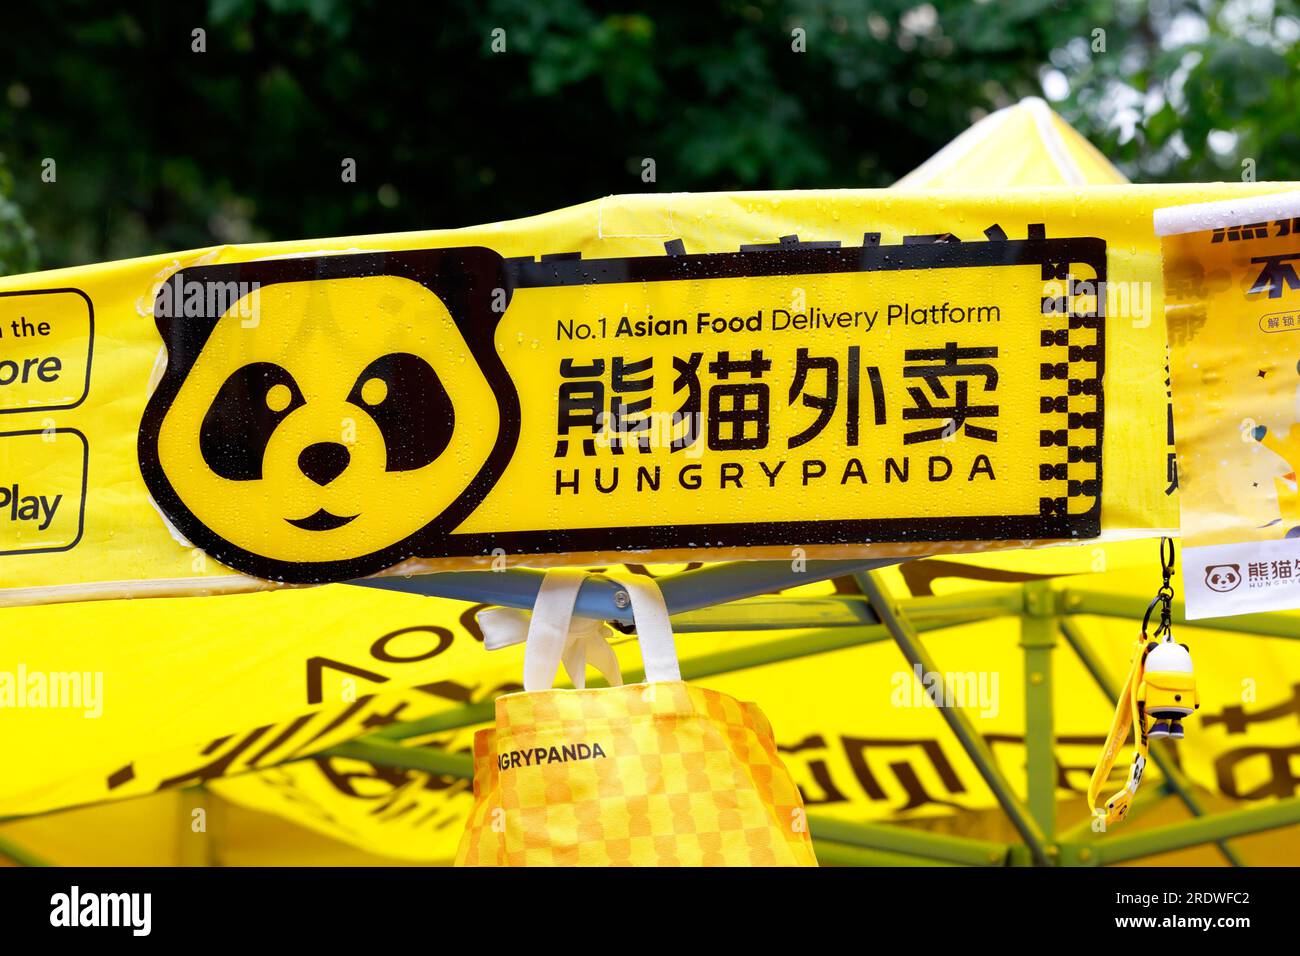 Beschilderung für Hungry Panda 熊貓外賣 Lieferplattform für asiatische Speisen Stockfoto